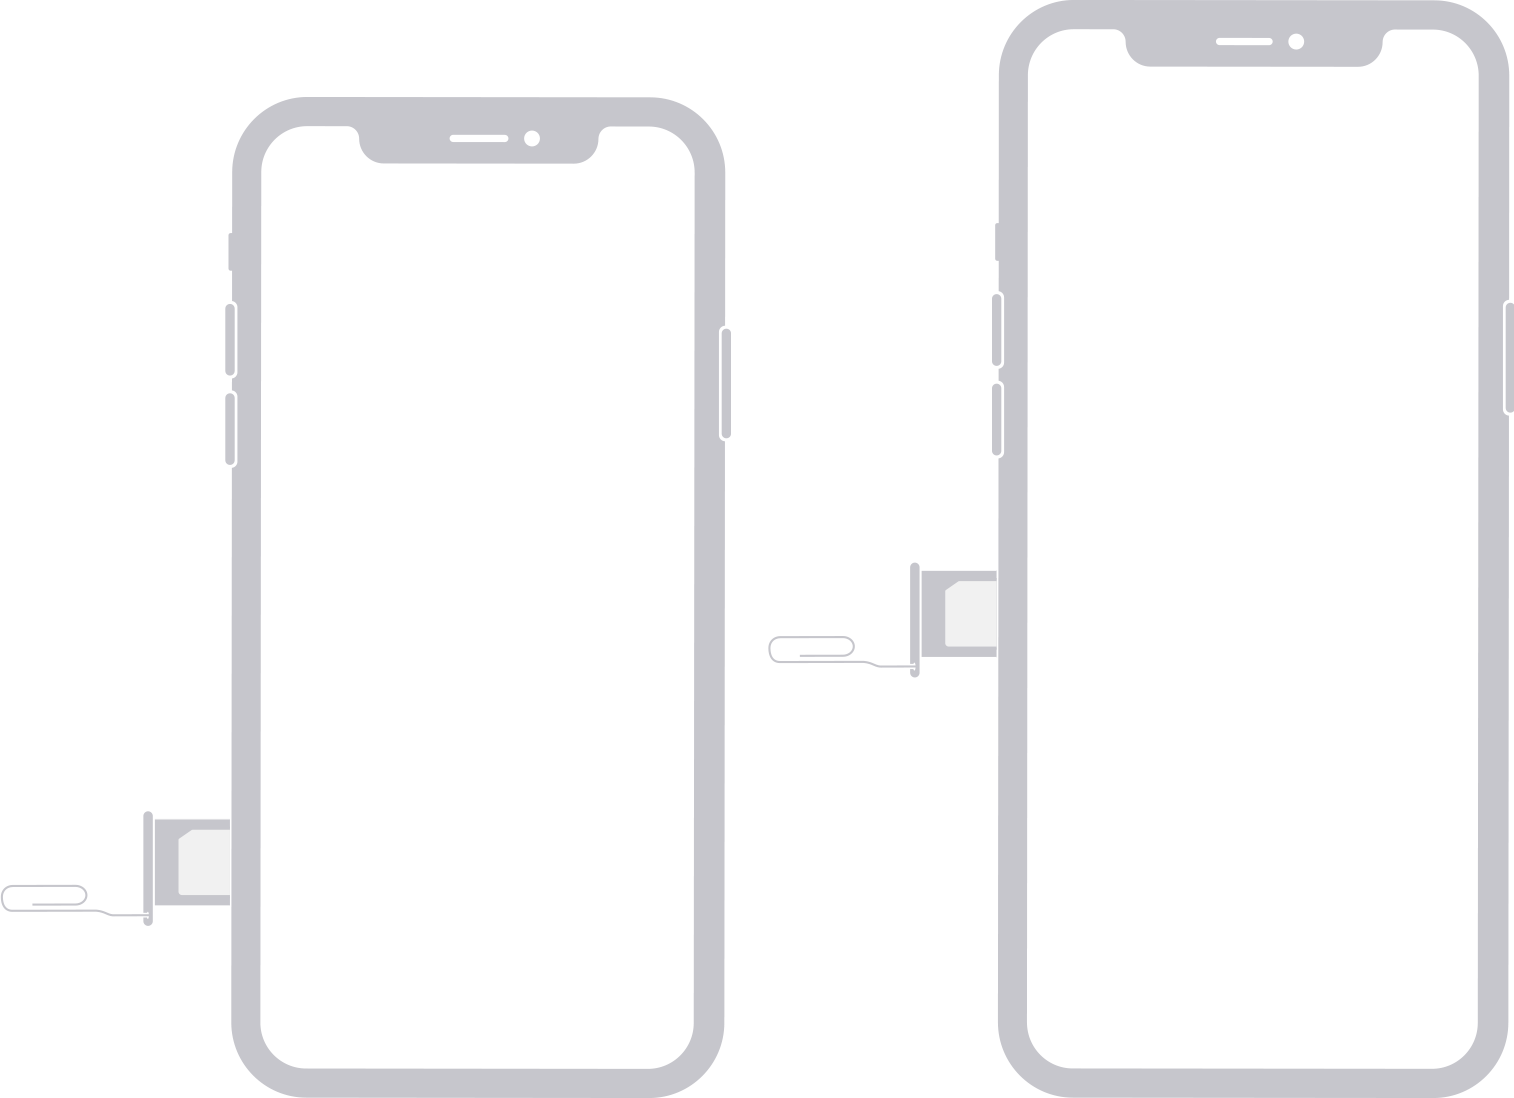 L’image montre une carte SIM du côté gauche d’un iPhone